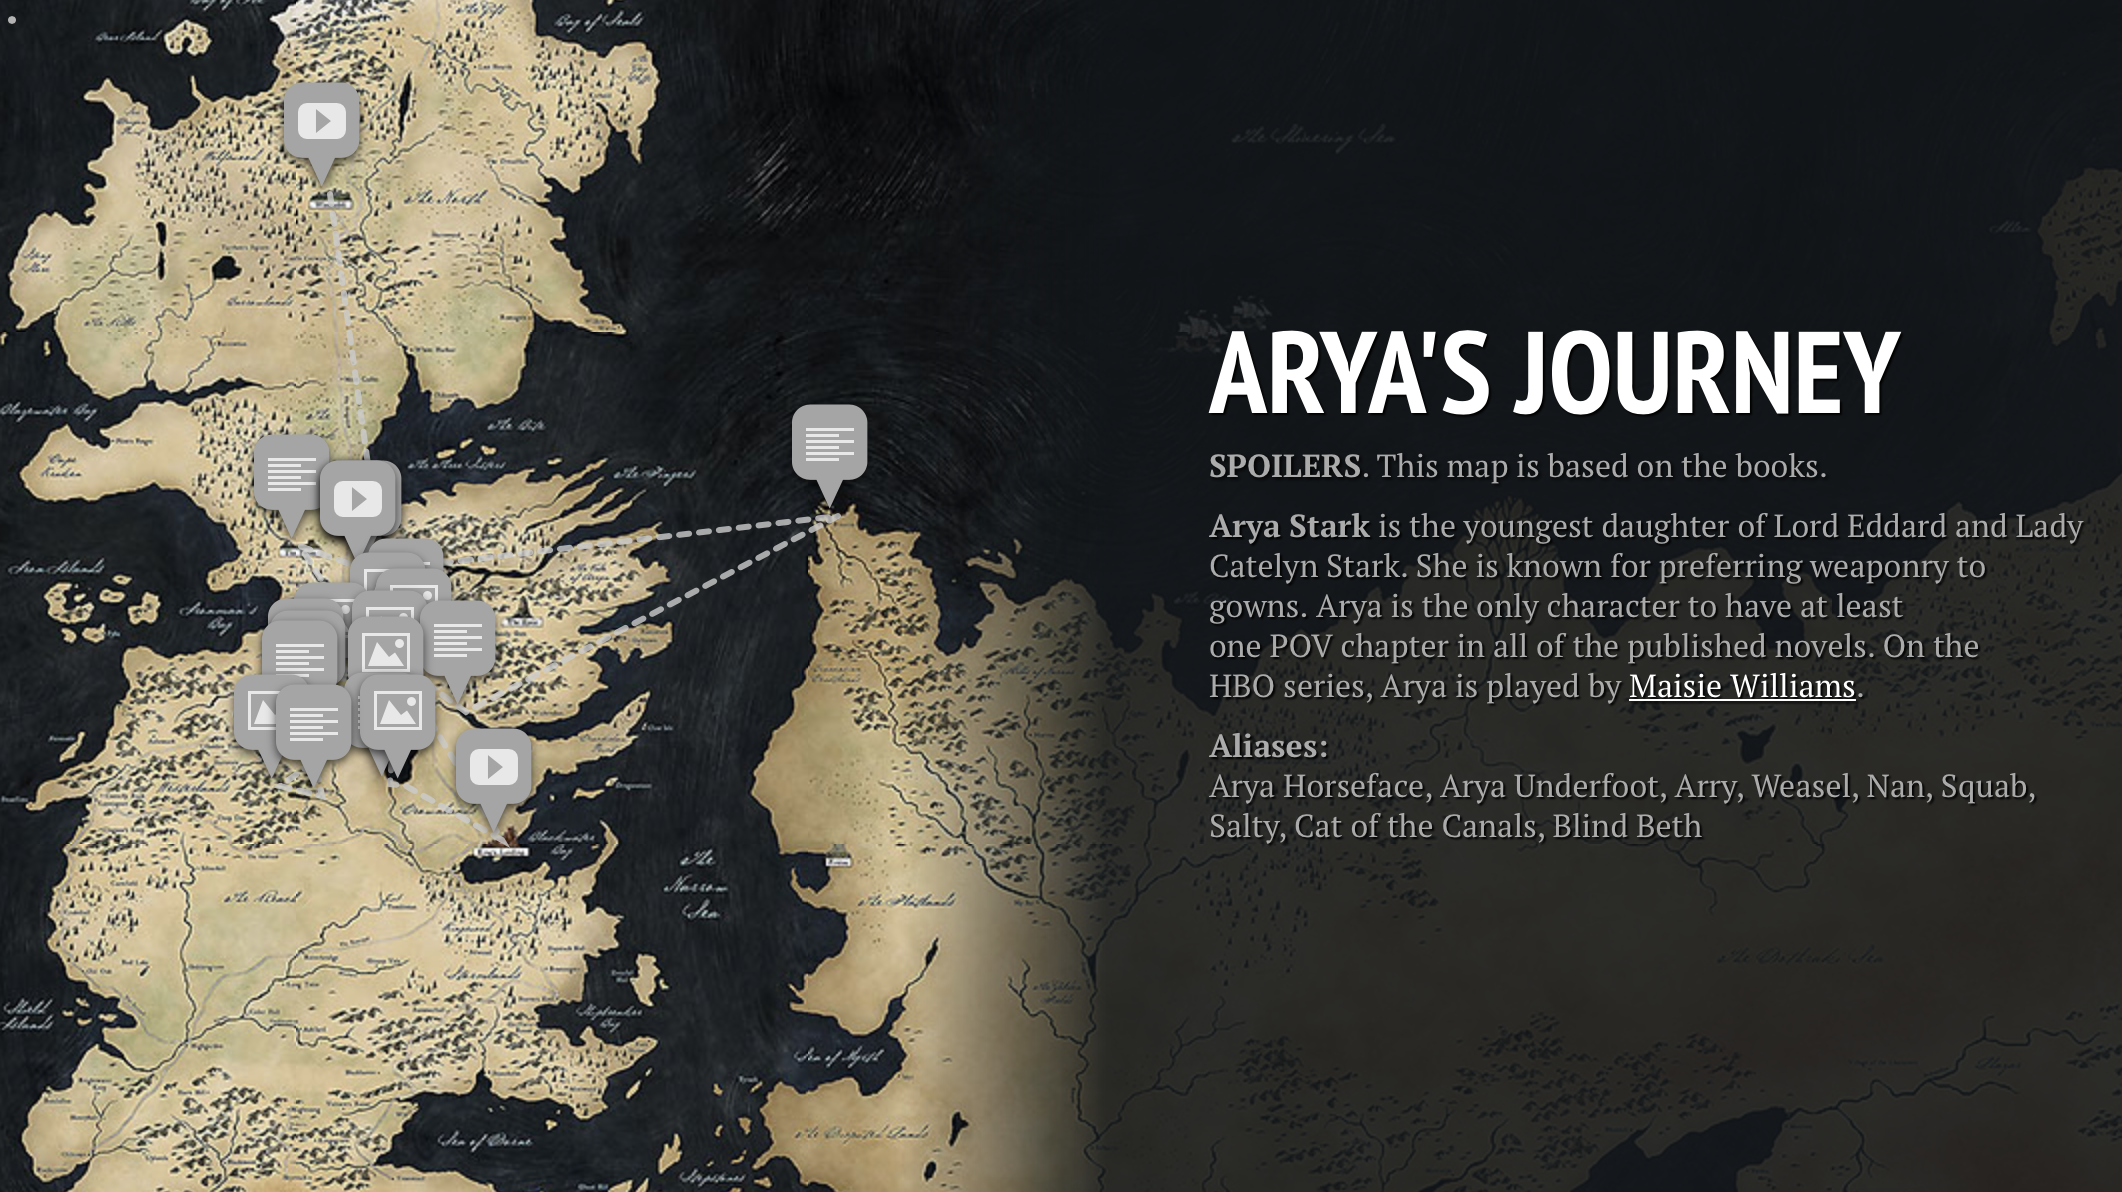 arya's journey map